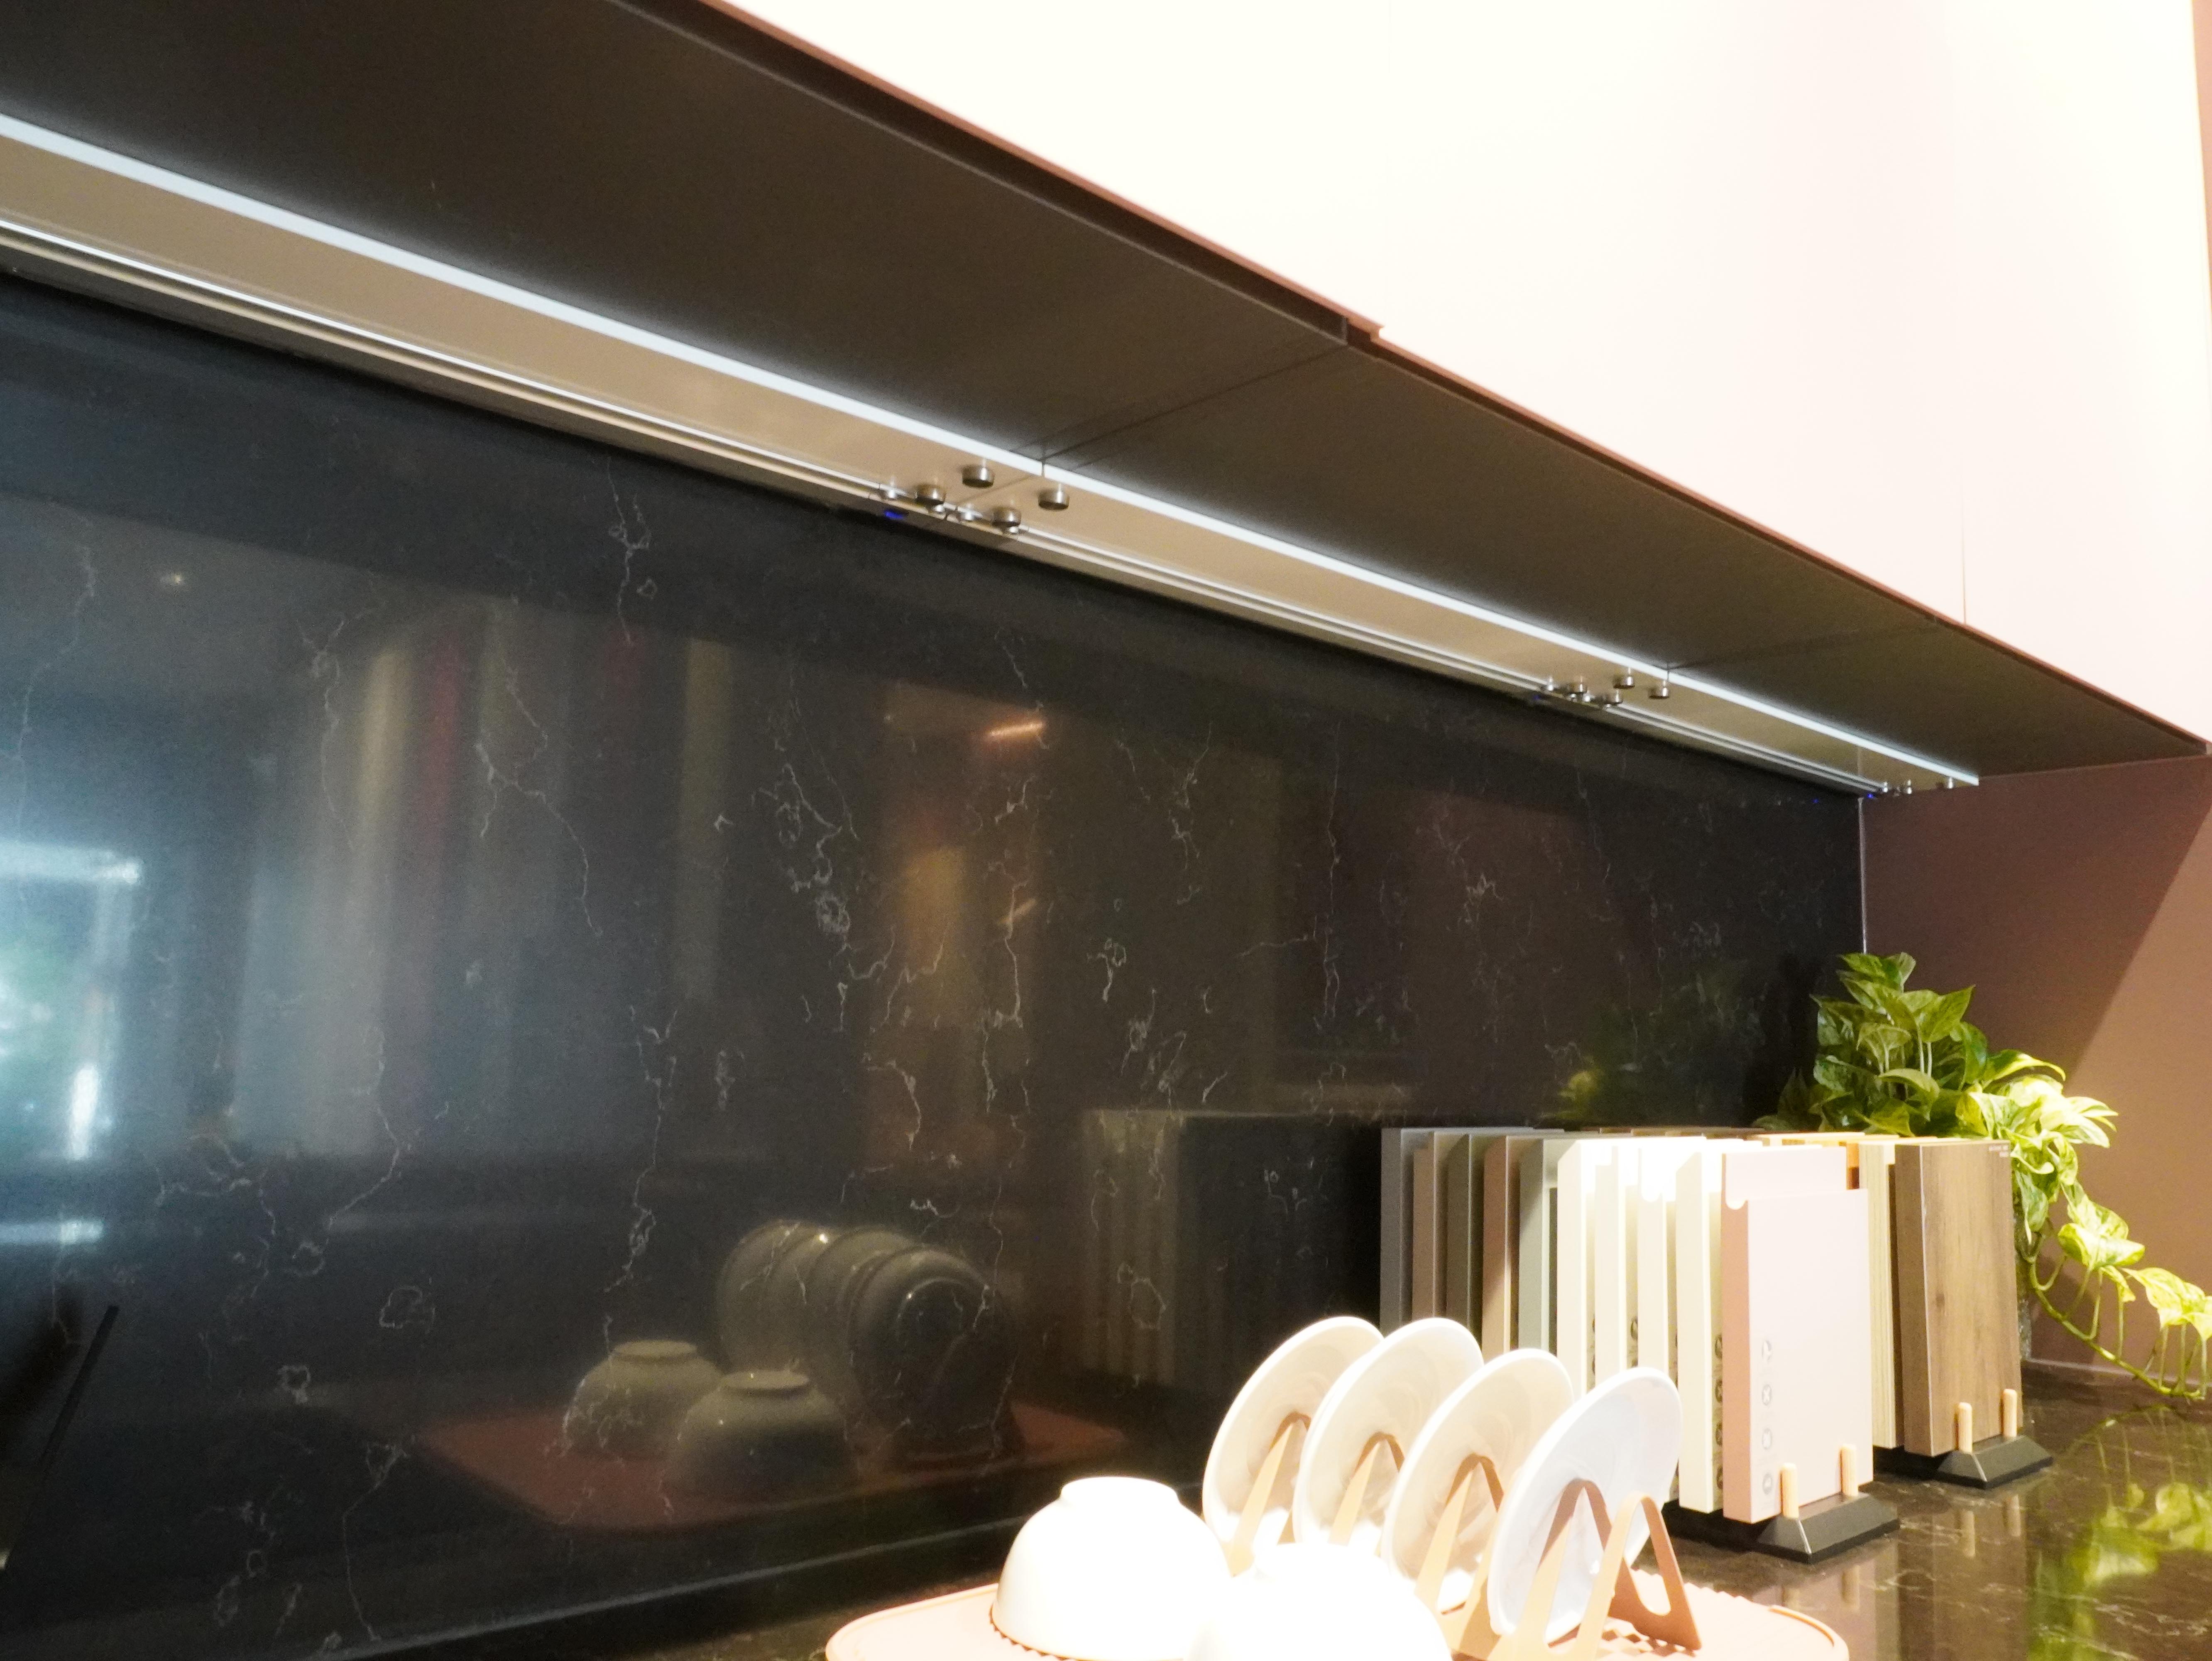 Đèn LED gắn dưới tủ treo rọi xuống mặt bếp